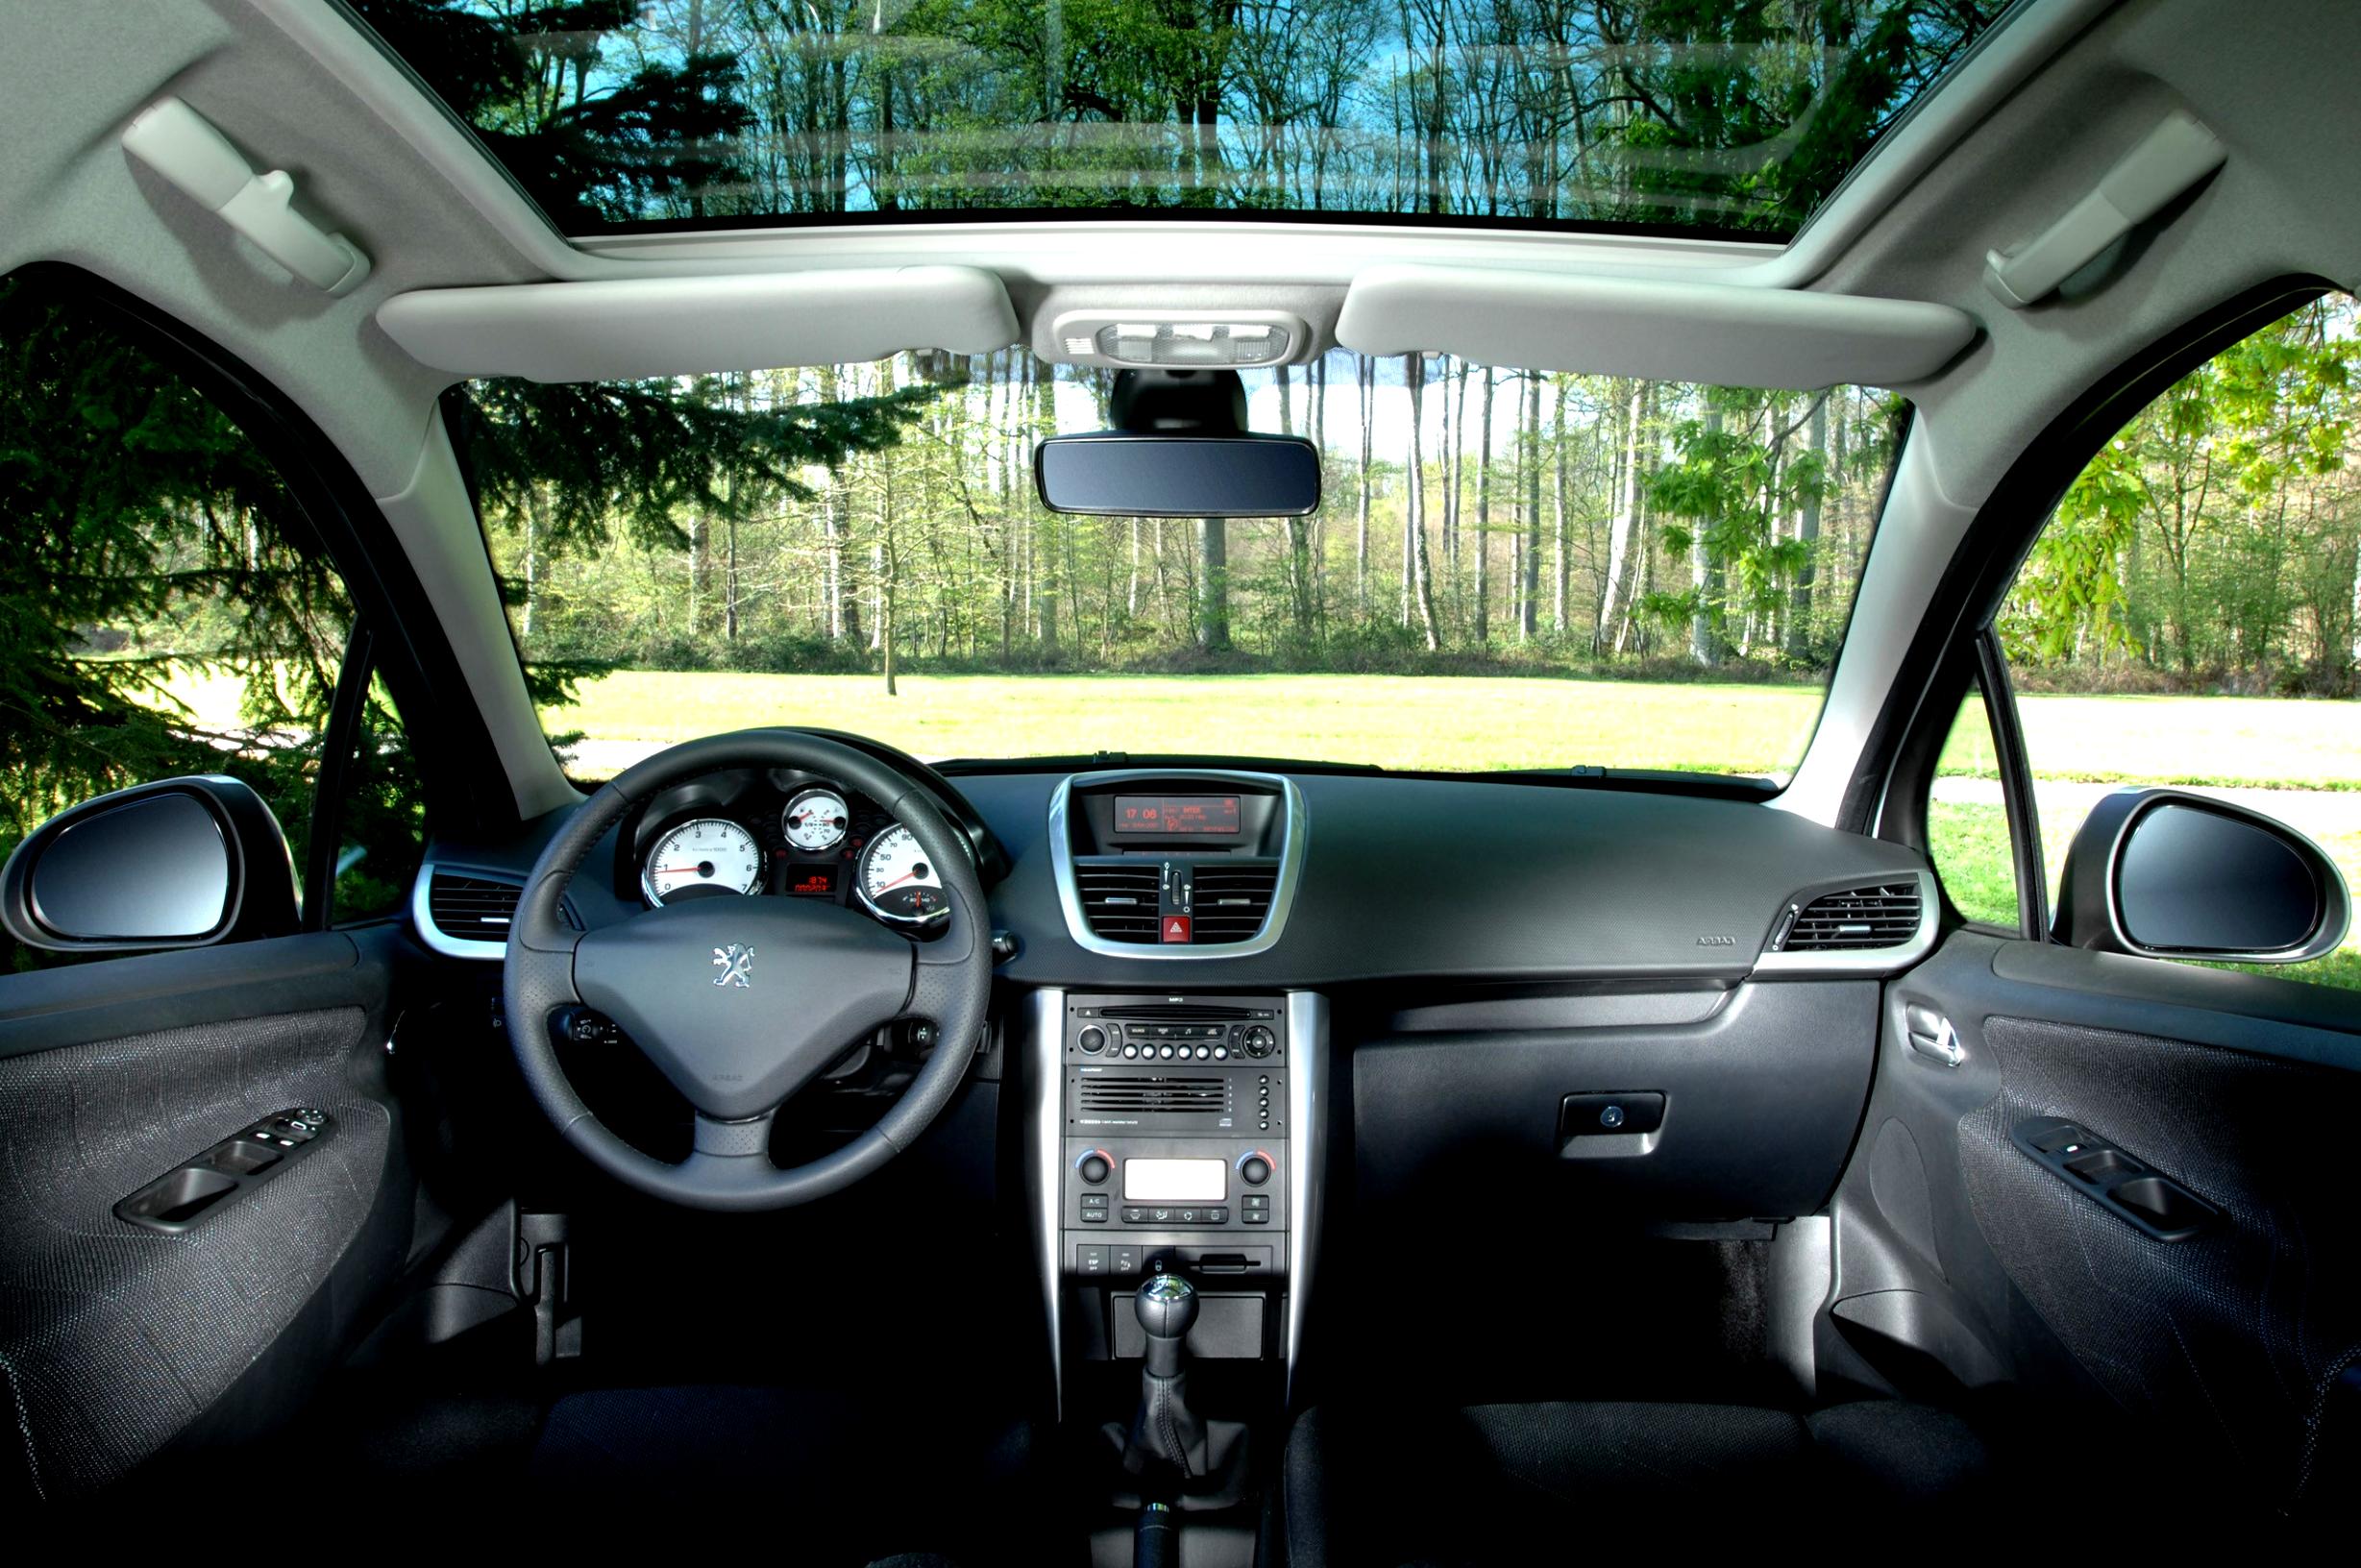 Невозможно настроить время на дисплее Peugeot 207 после замены магнитолы фото